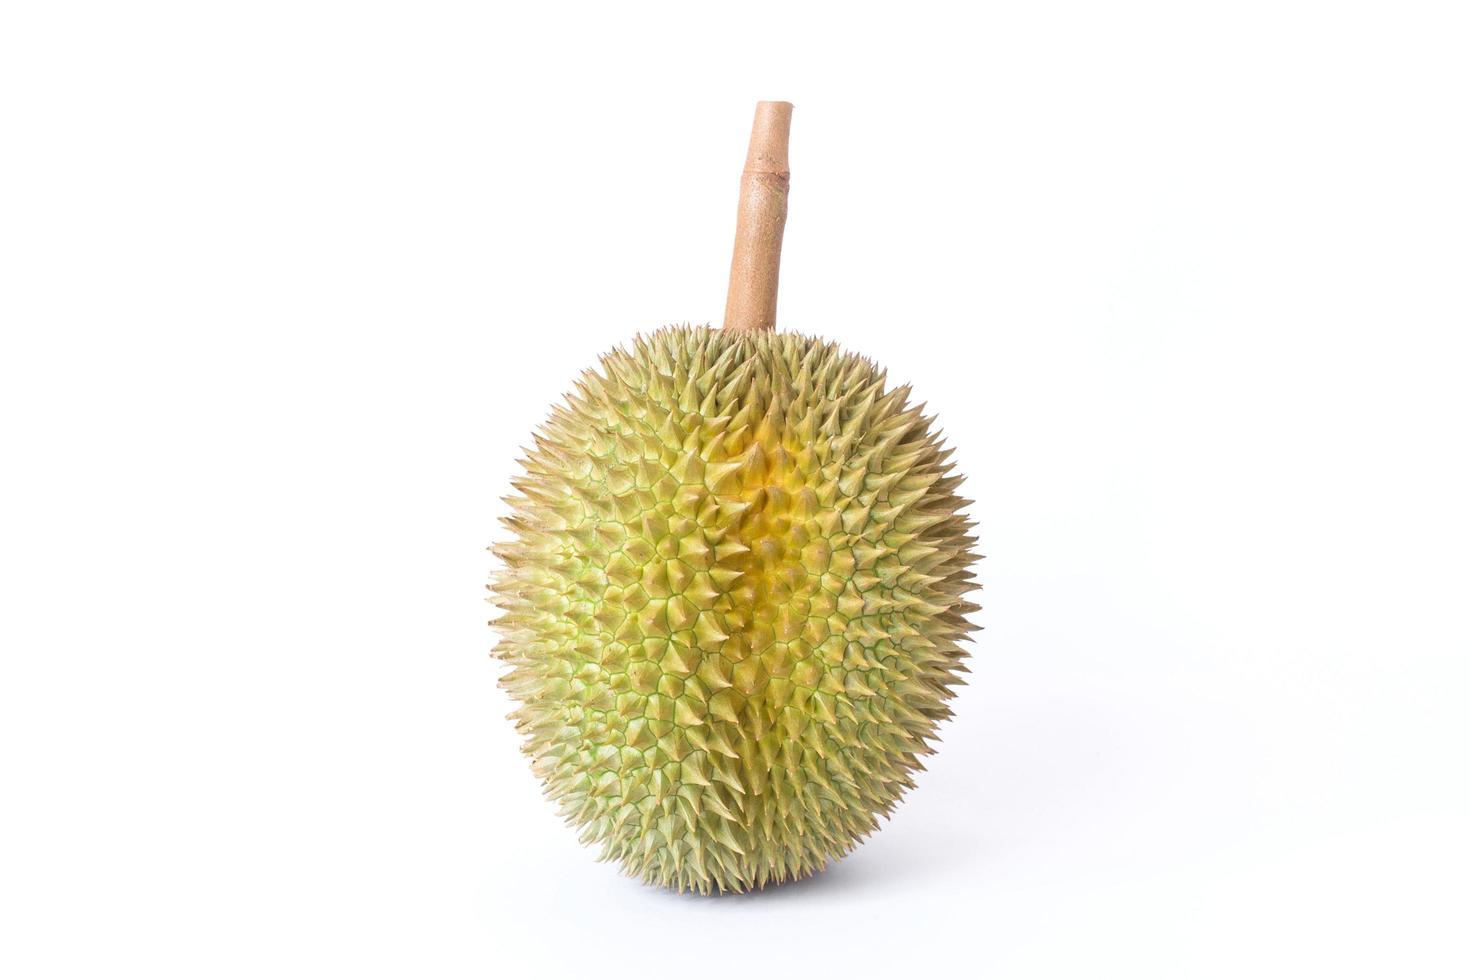 durian como rey de la fruta en tailandia. tiene un olor fuerte y una corteza cubierta de espinas. foto